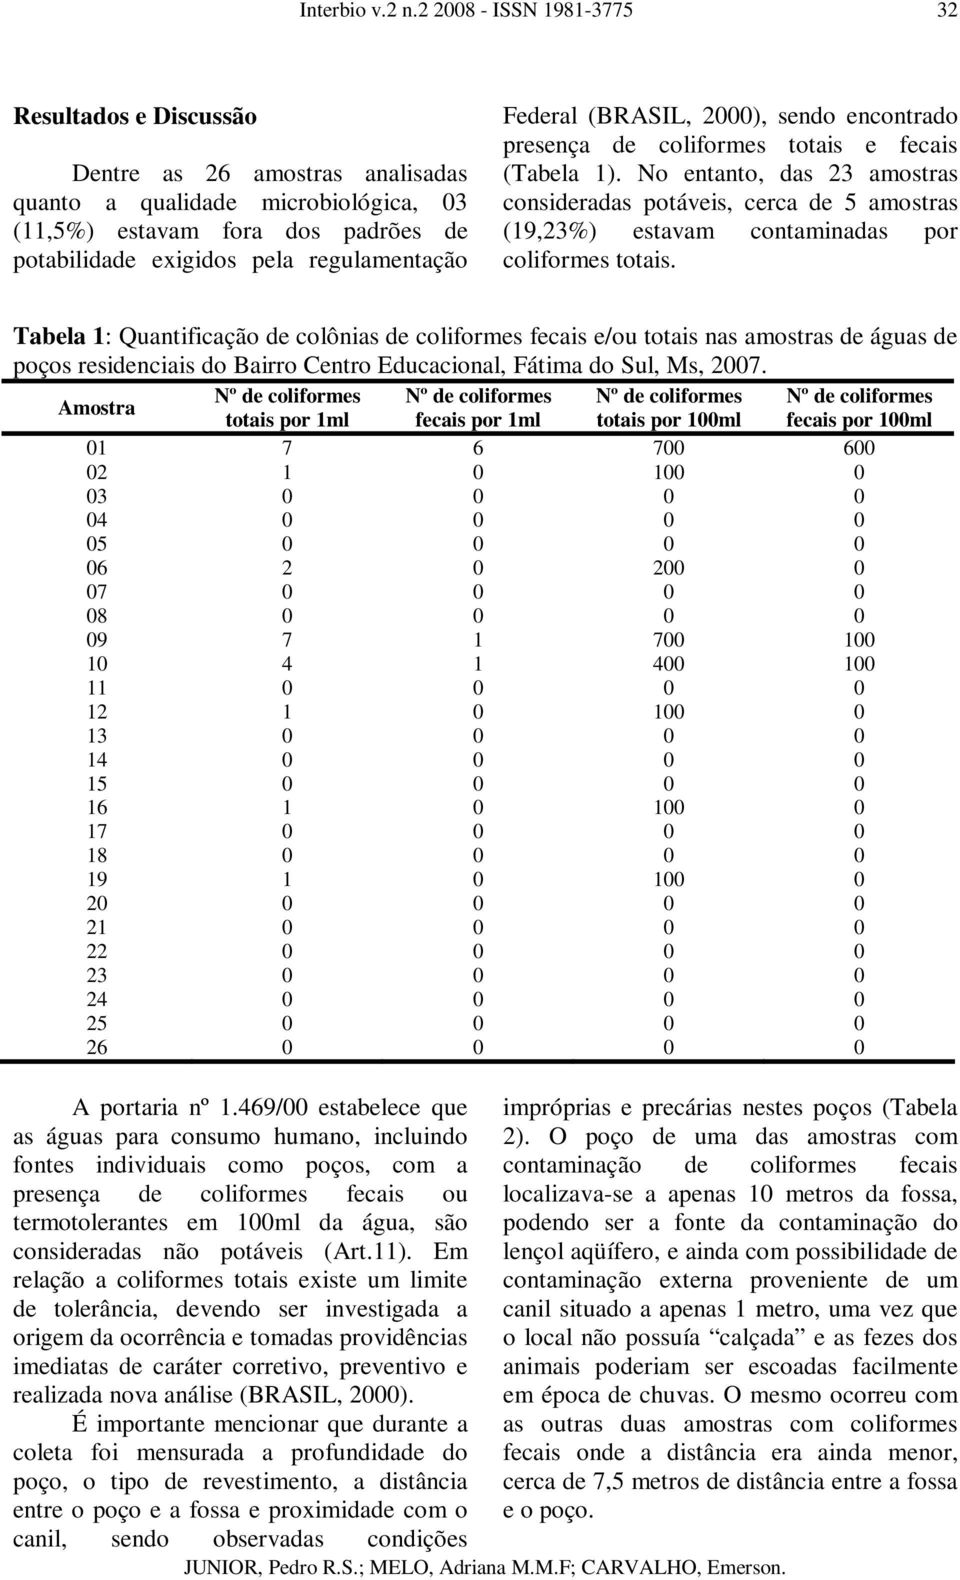 Tabela 1: Quantificação de colônias de coliformes fecais e/ou totais nas amostras de águas de poços residenciais do Bairro Centro Educacional, Fátima do Sul, Ms, 2007.